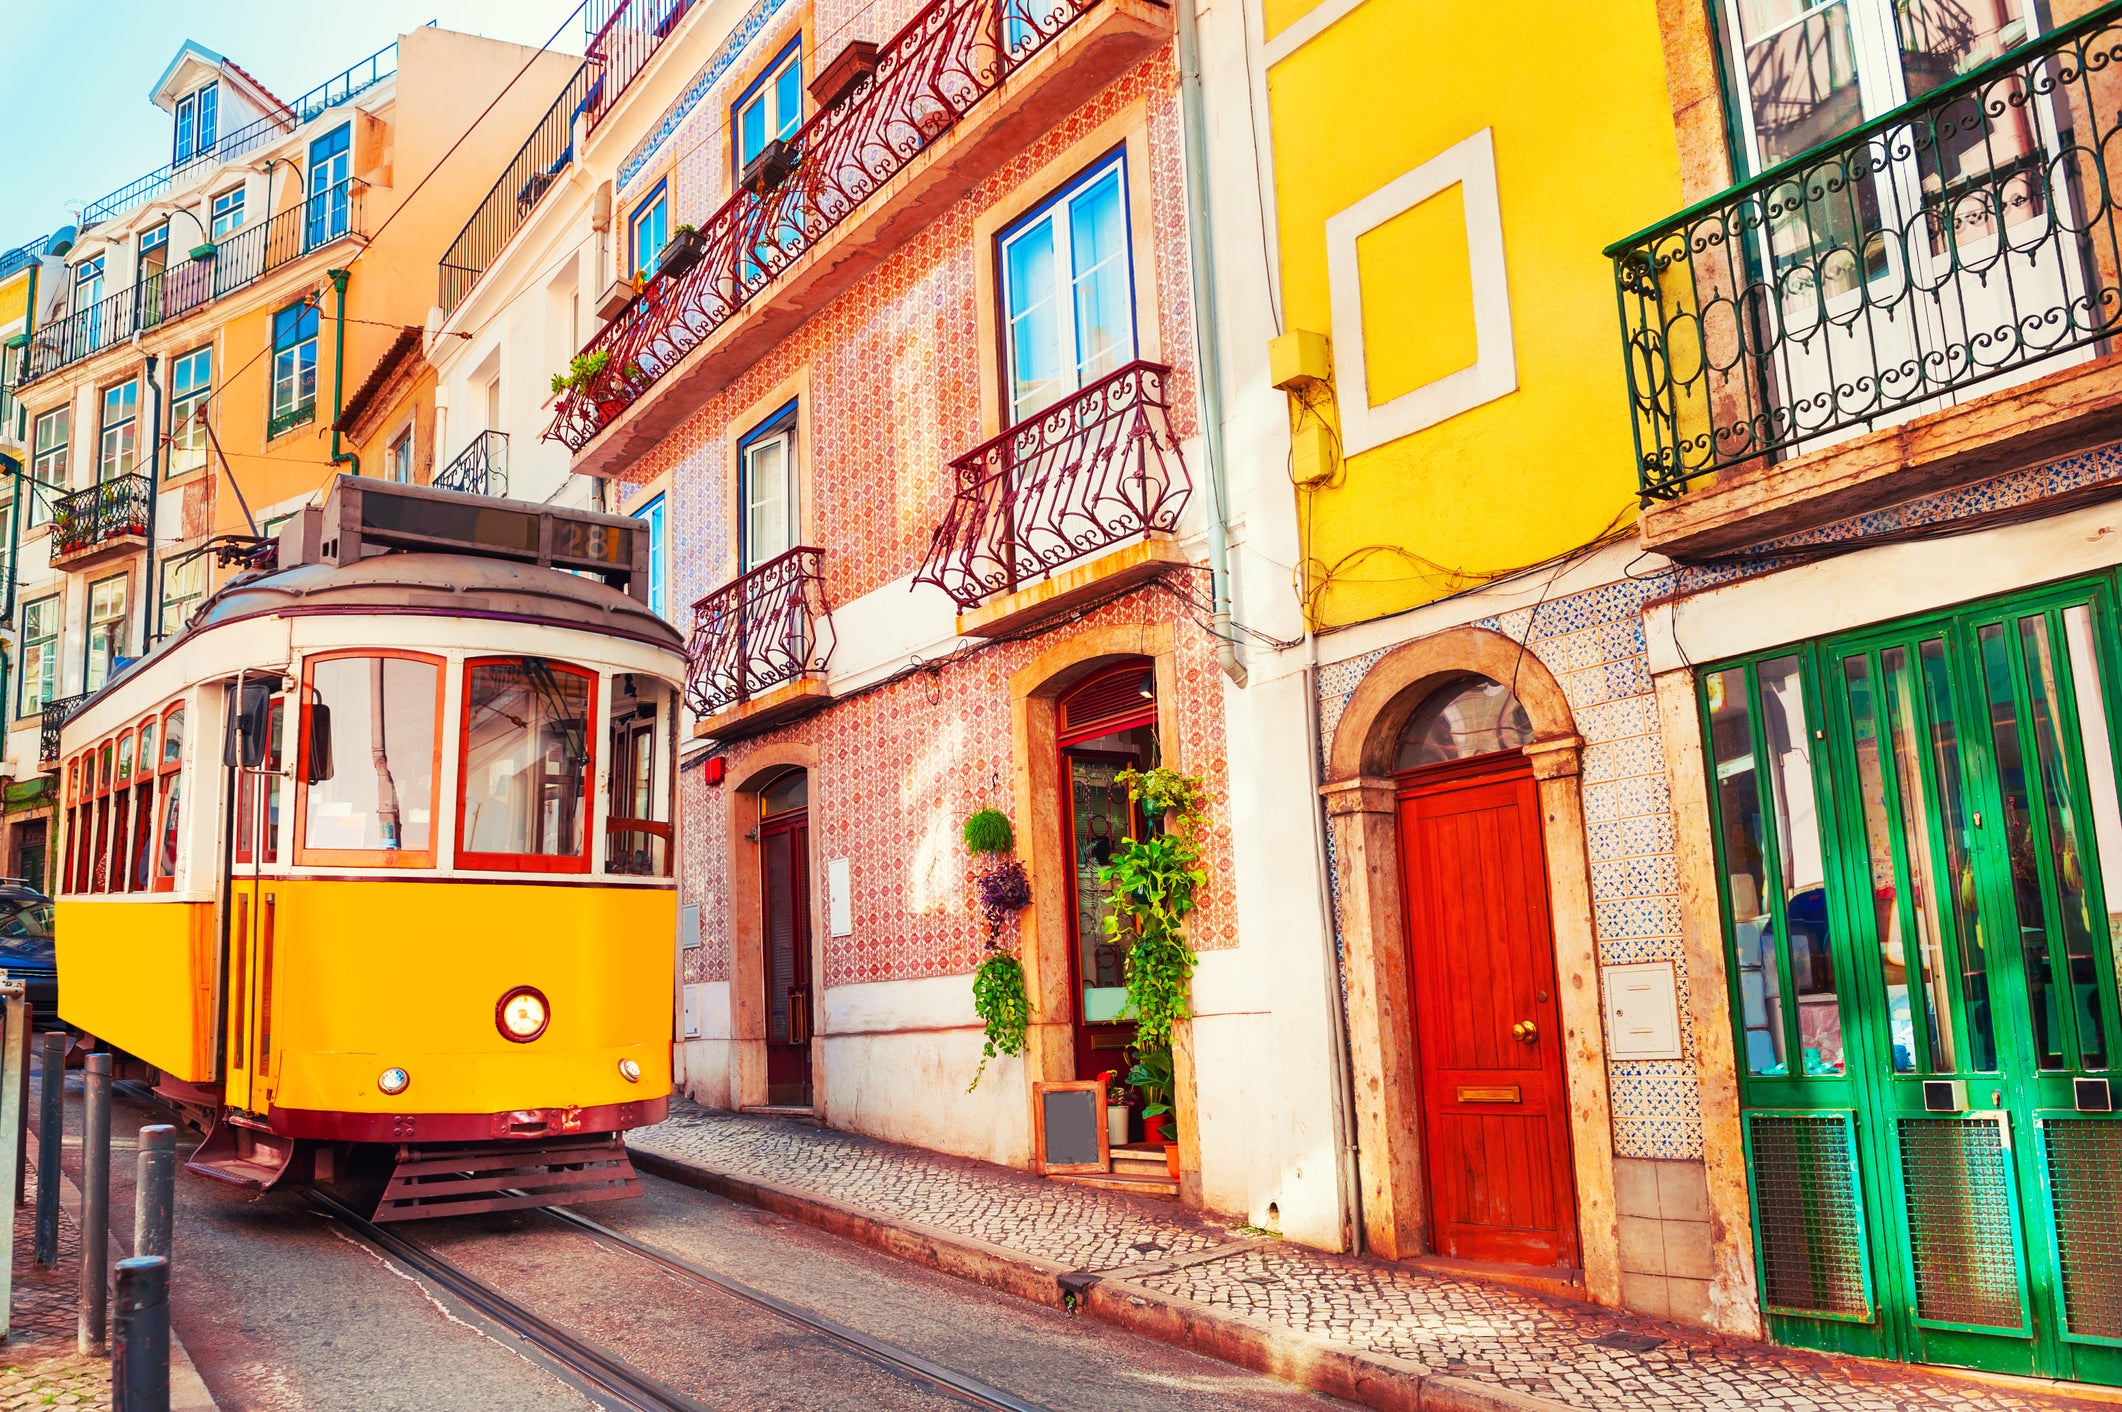 A vintage tram in Lisbon, Portugal